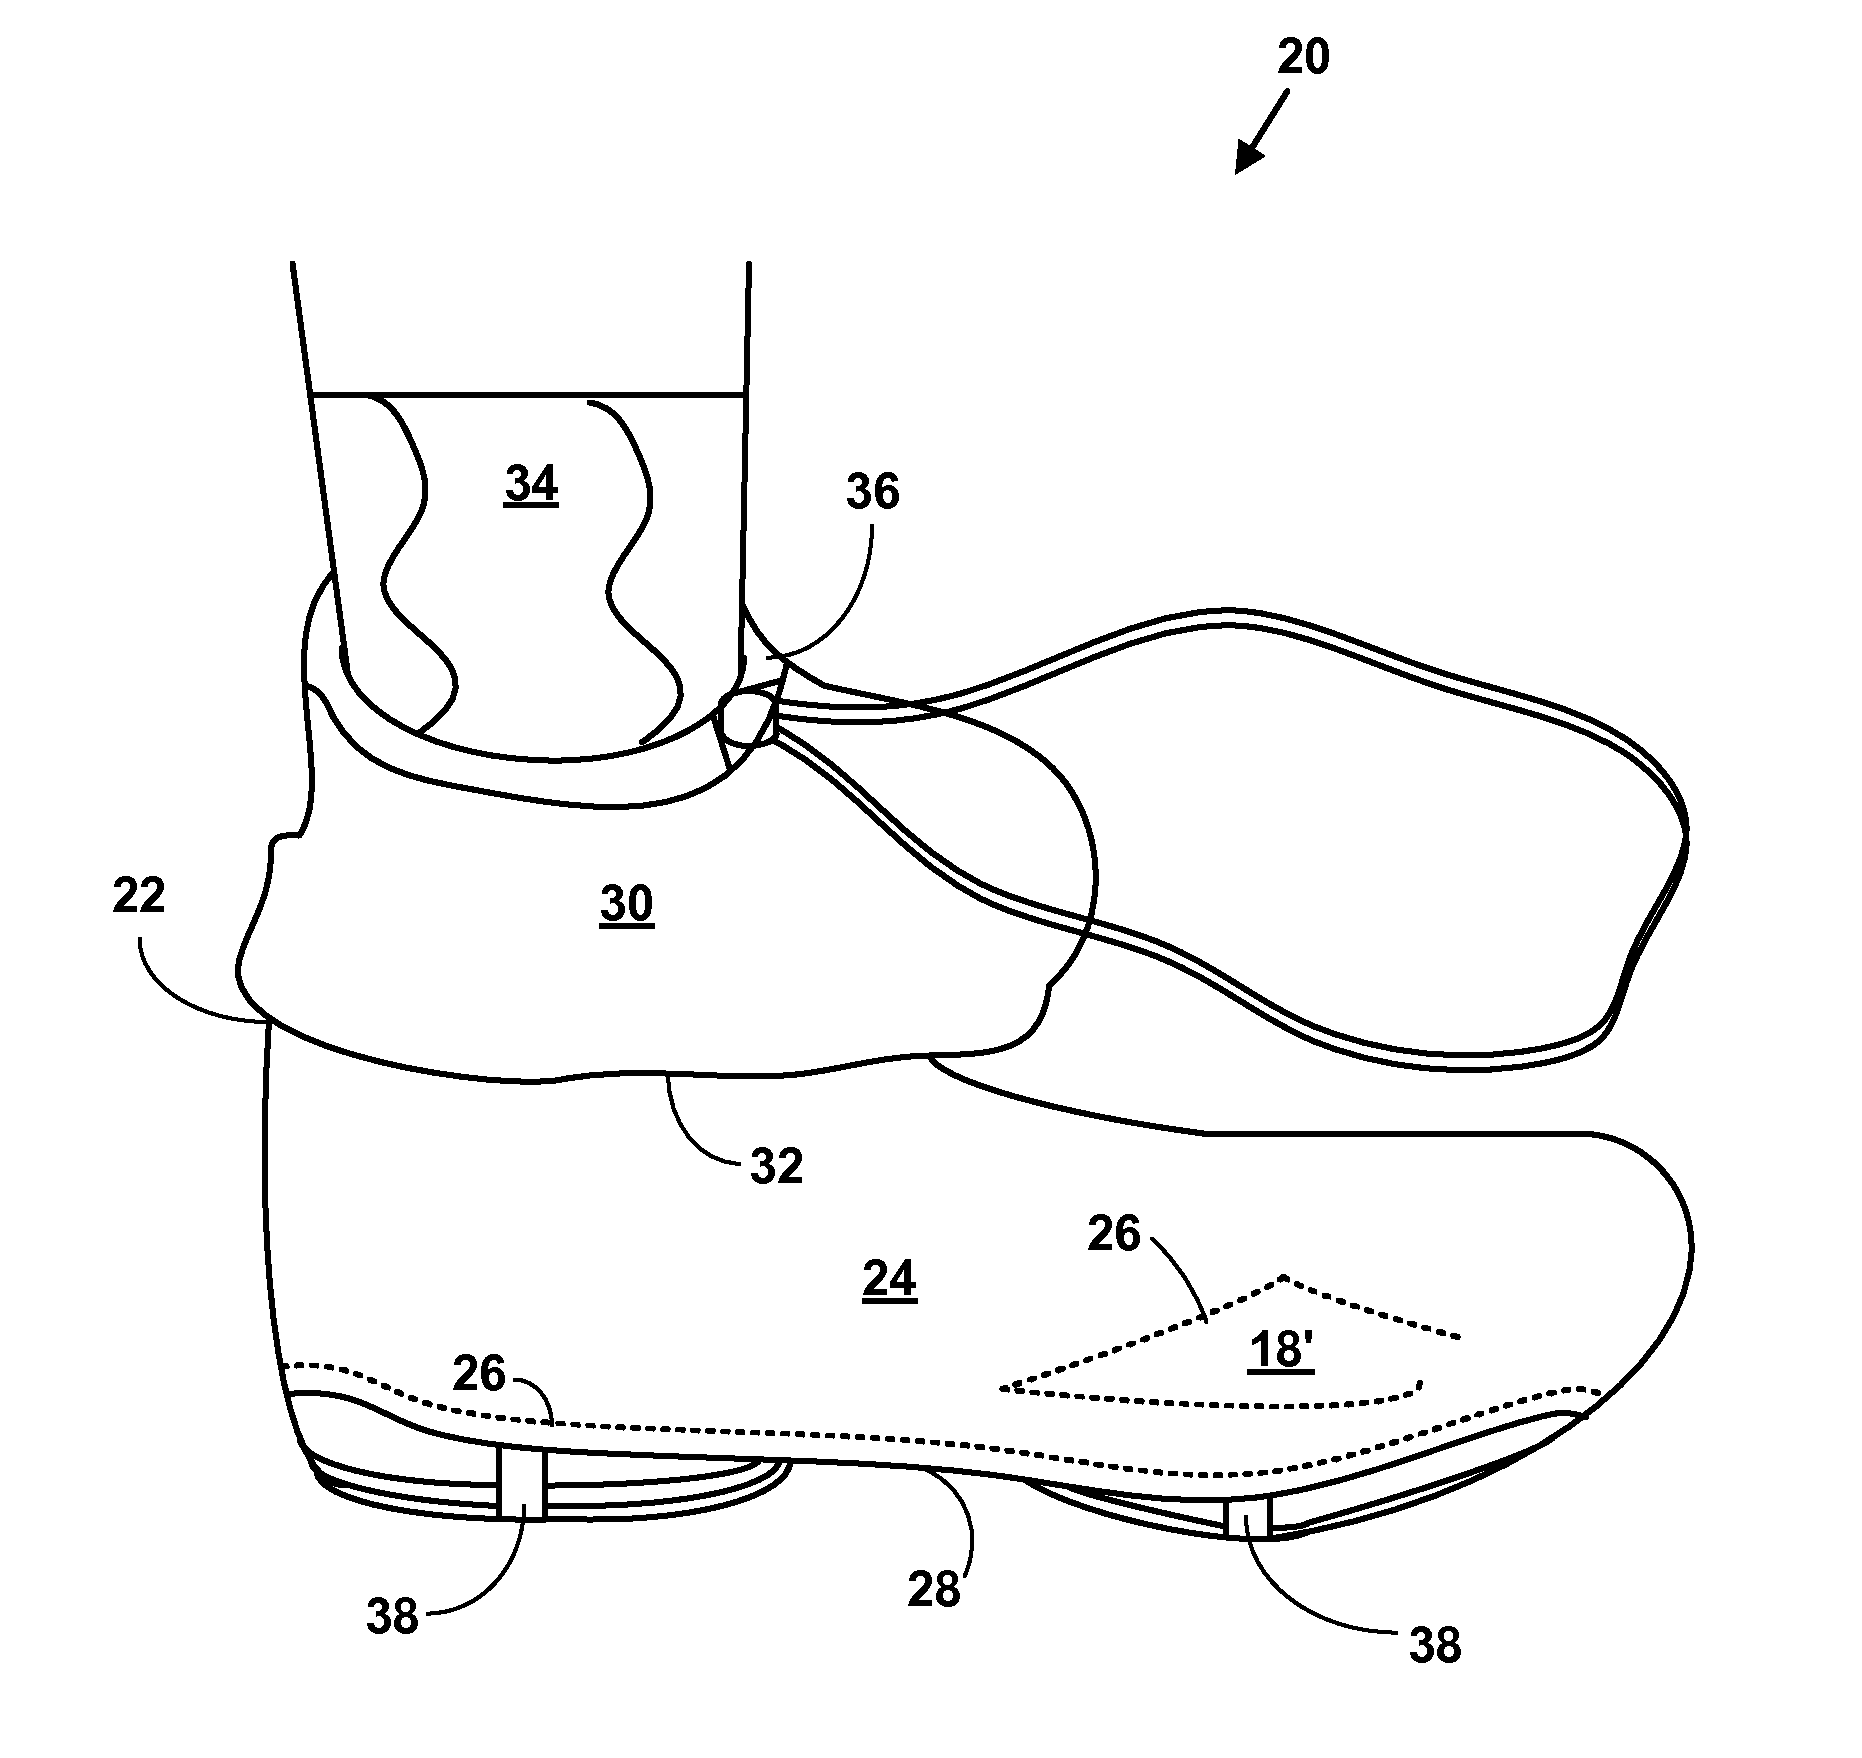 Portable shoe cover apparatus